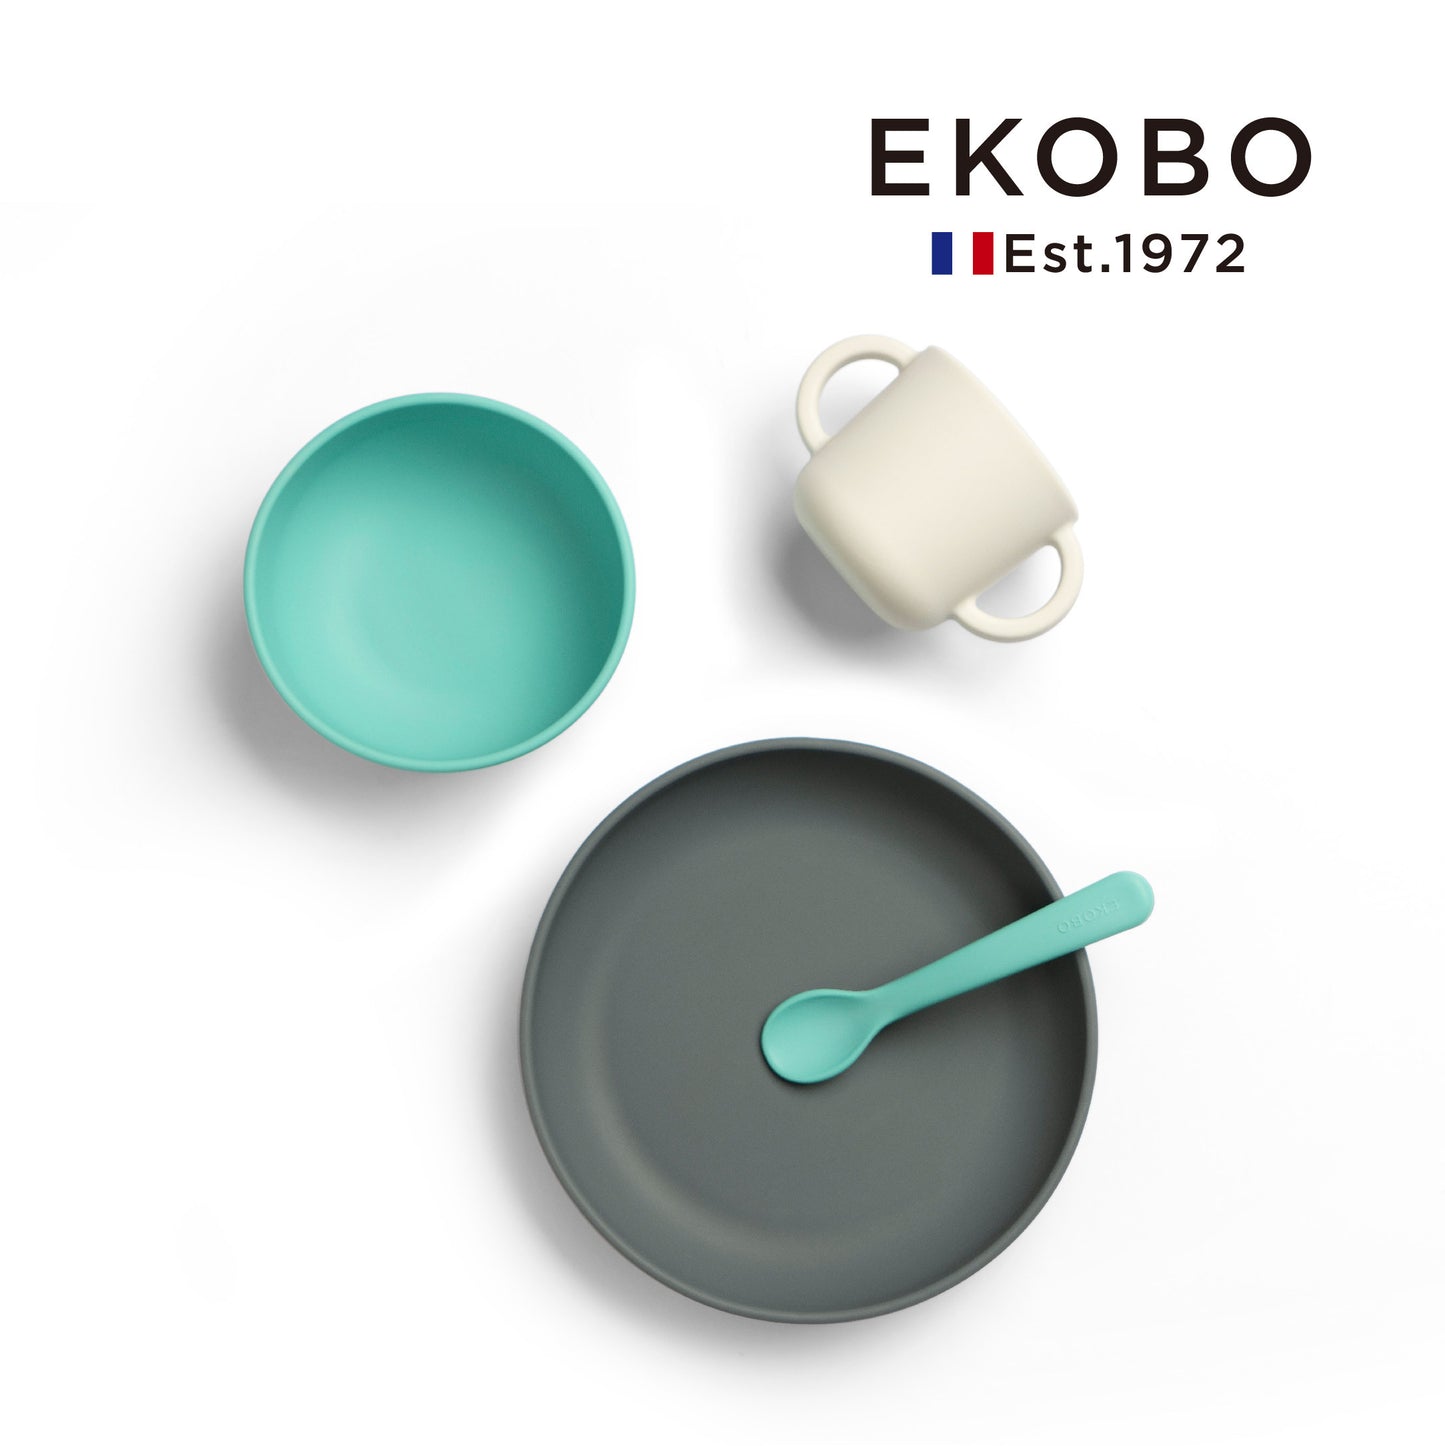 【EKOBO】Non-slip silicone study tableware four-piece set-mint green